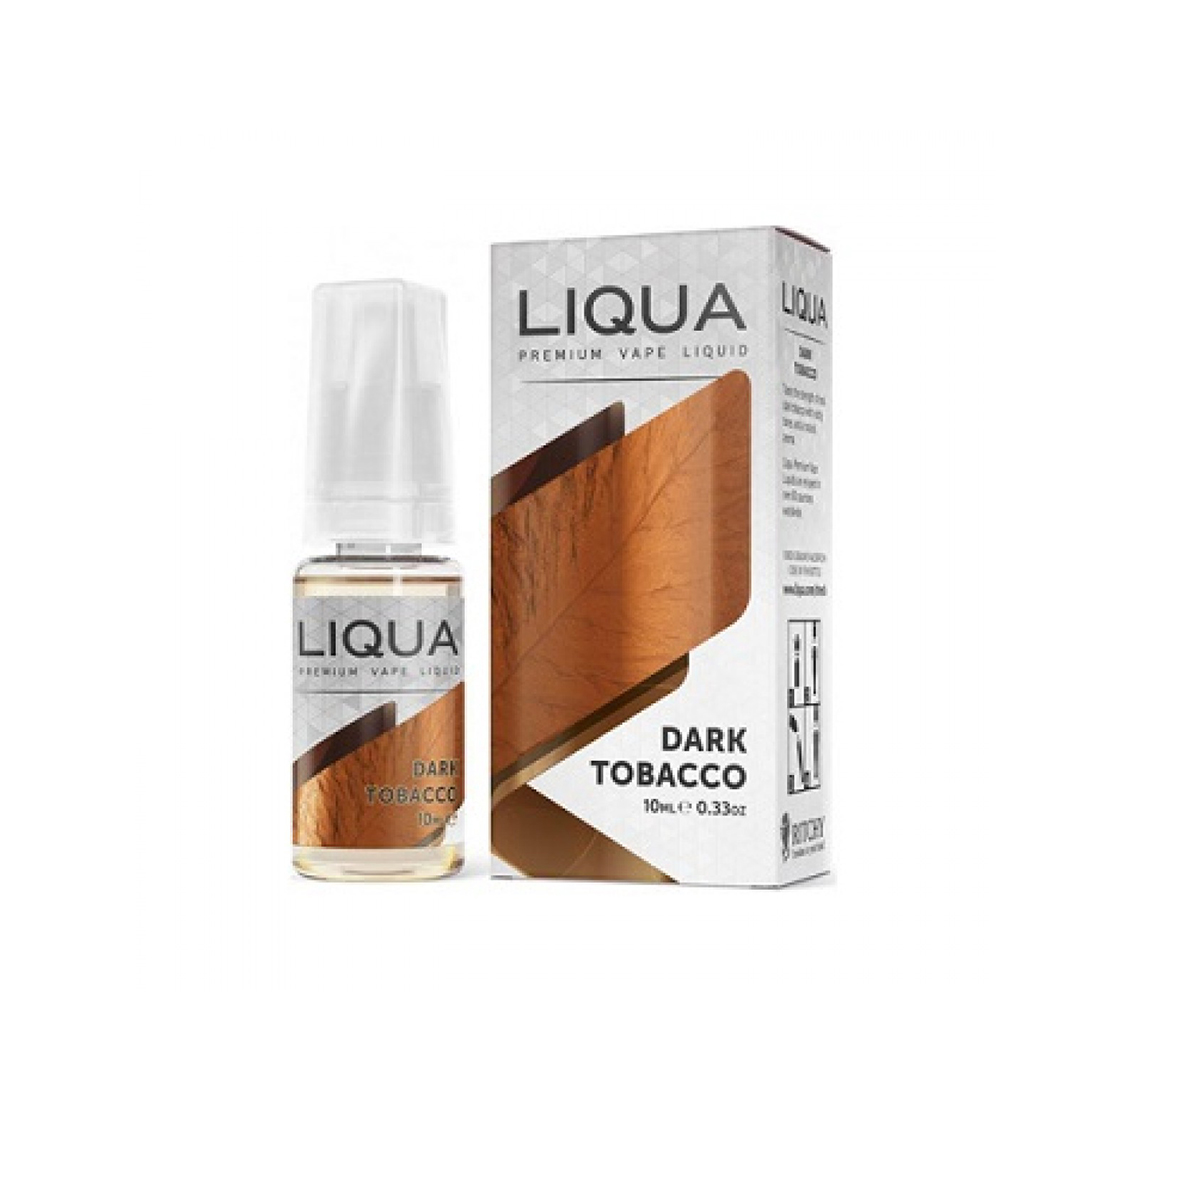 Liqua Dark tobacco